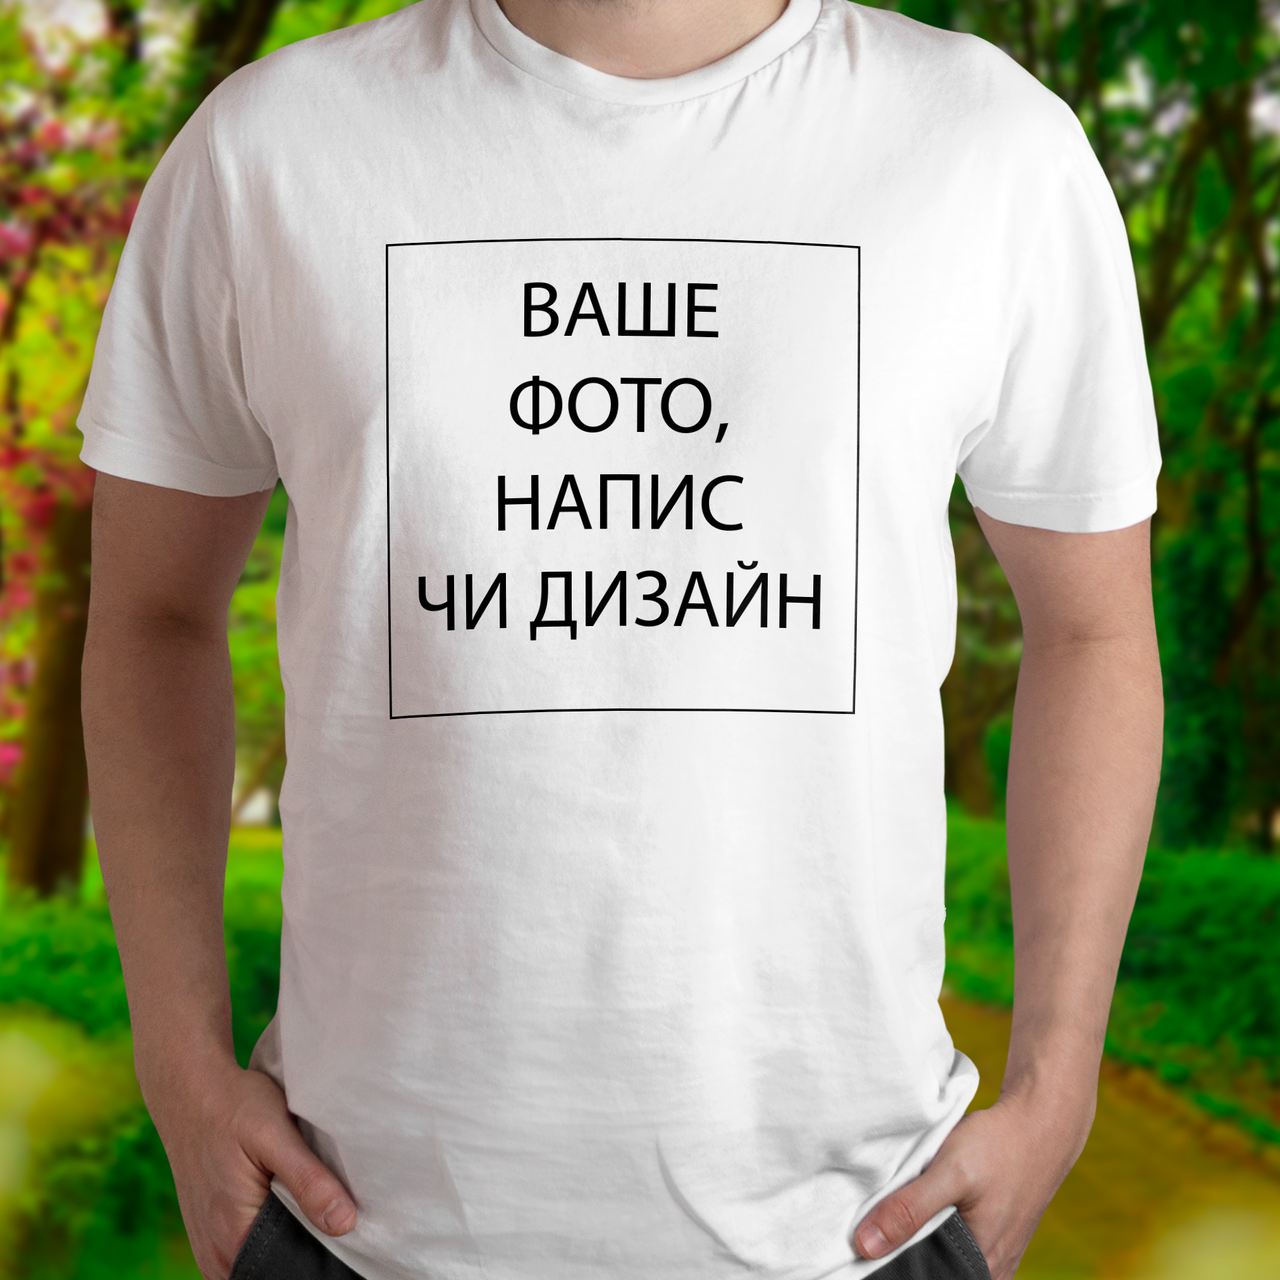 Патріотична чоловіча футболка зі своїм написом, фото чи дизайном біла